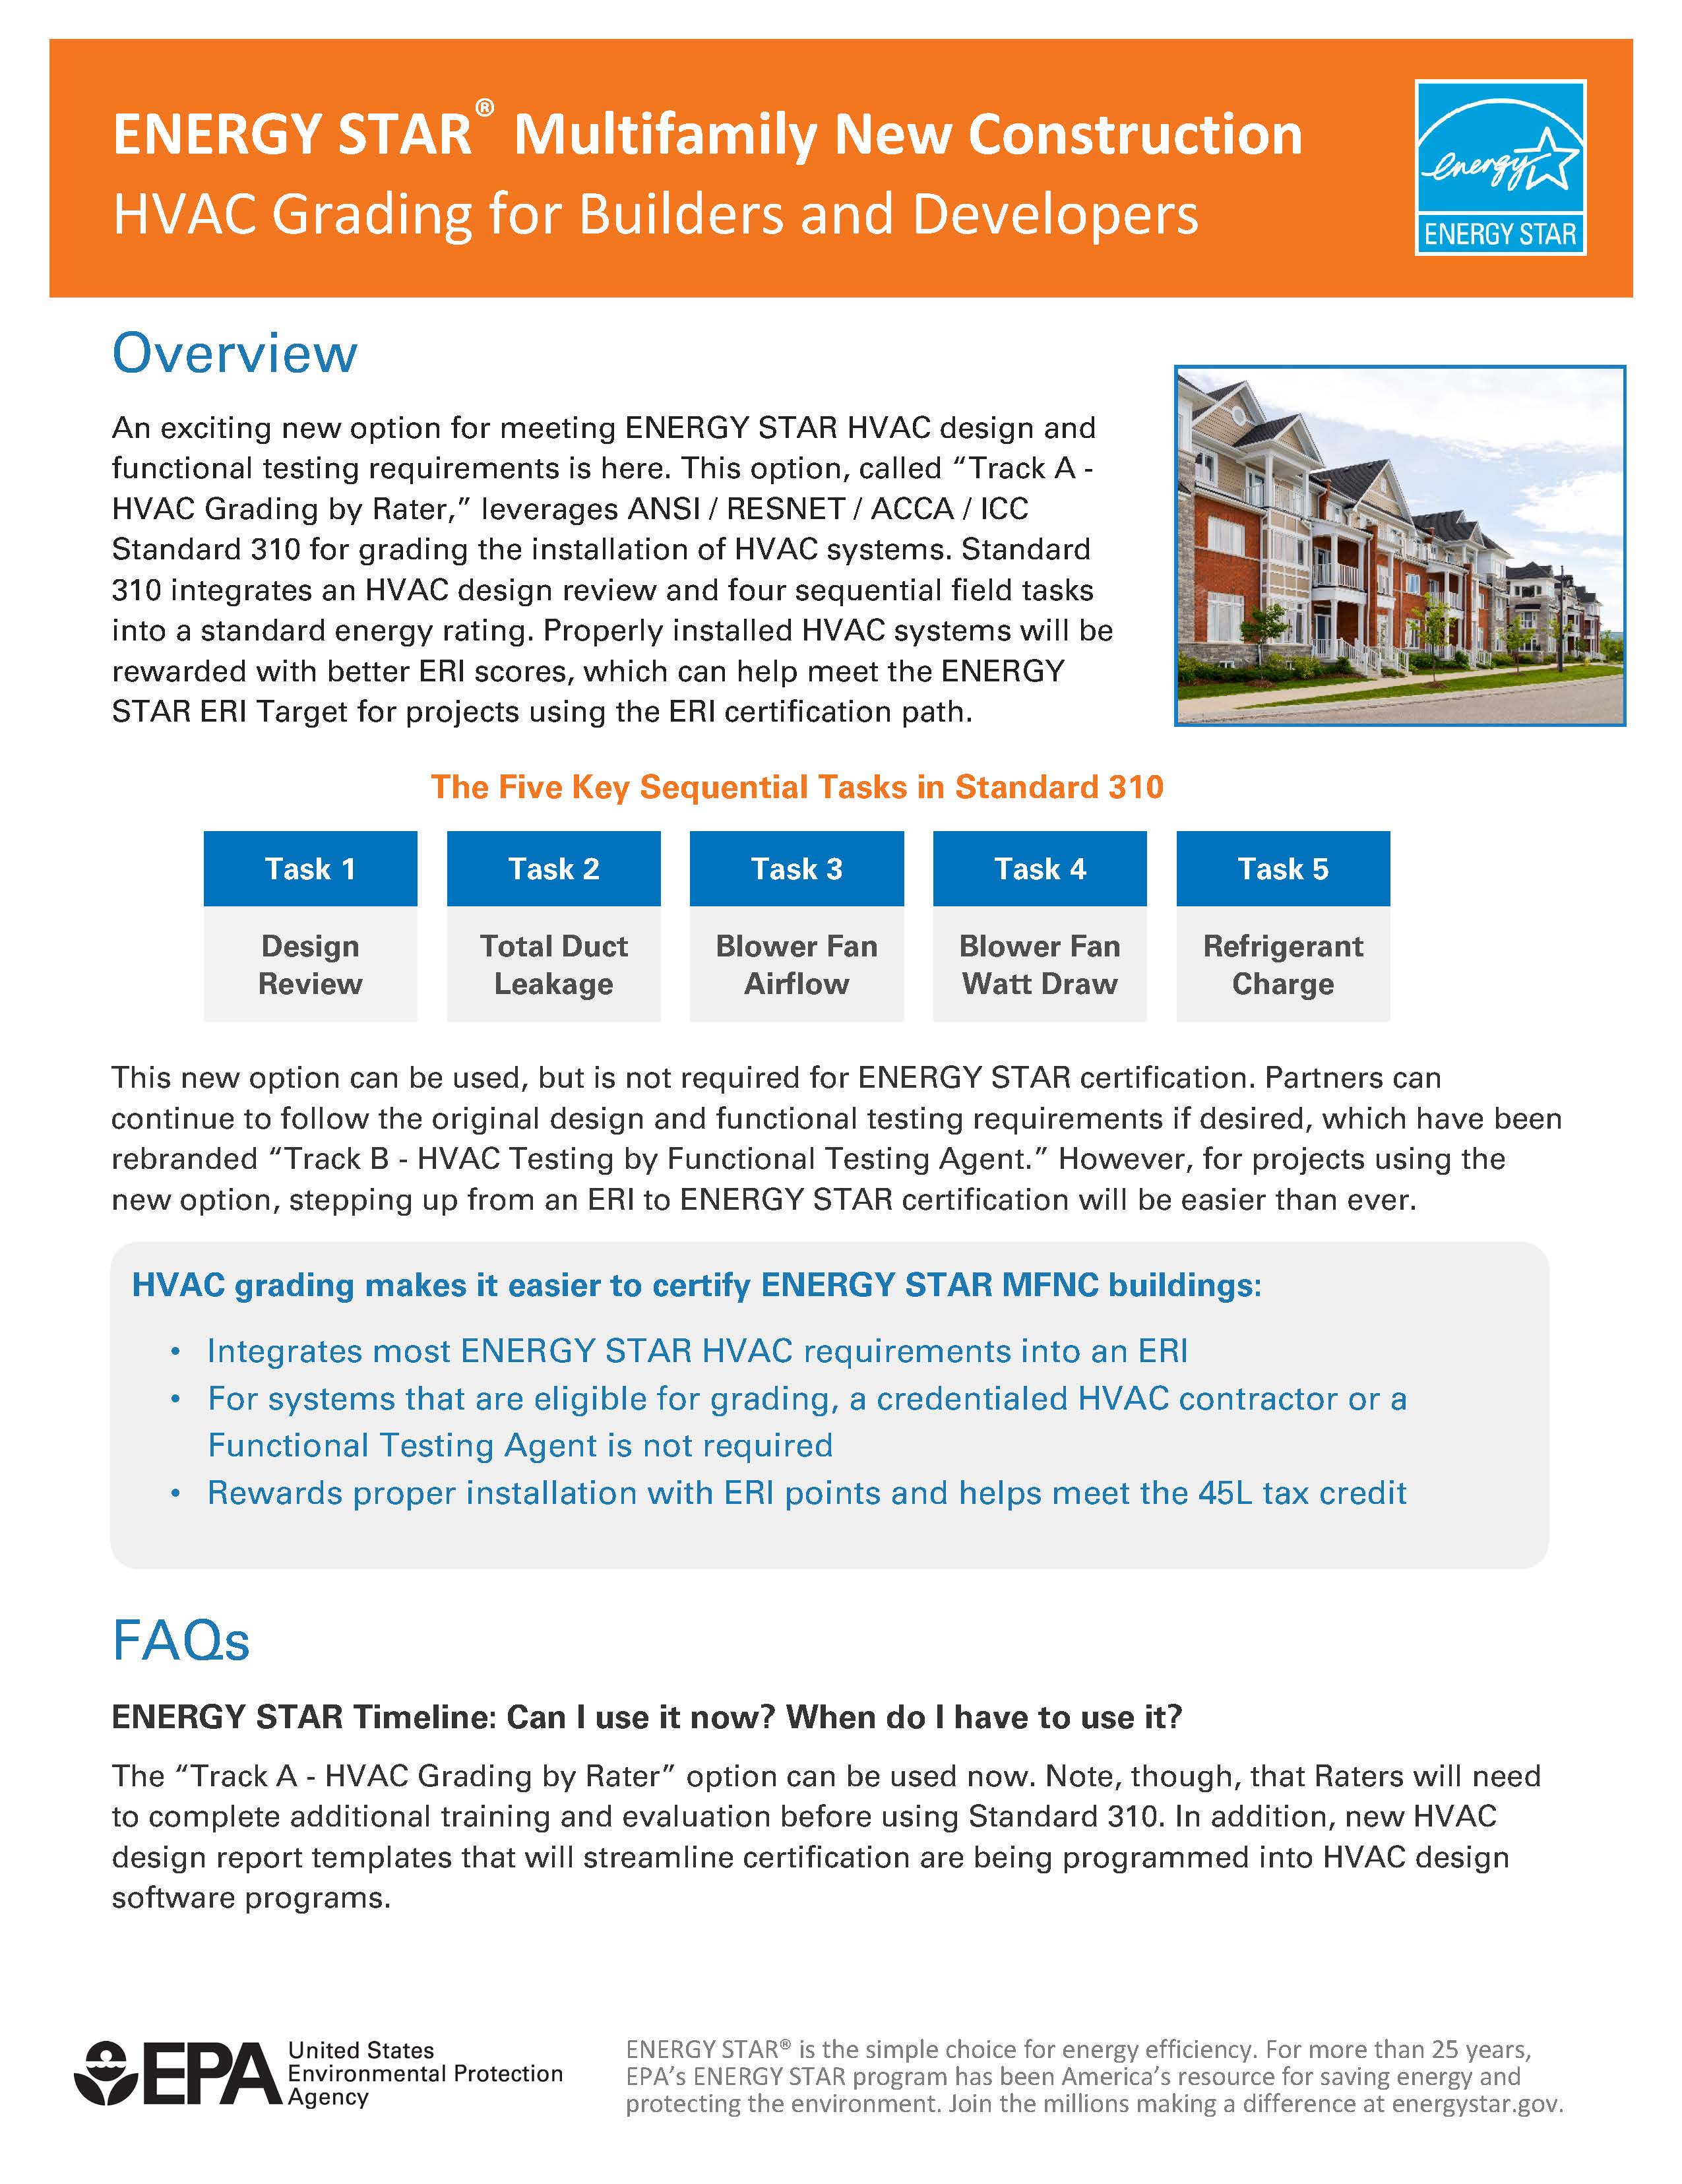 HVAC Grading for Builders Fact Sheet – ENERGY STAR Multifamily New Construction